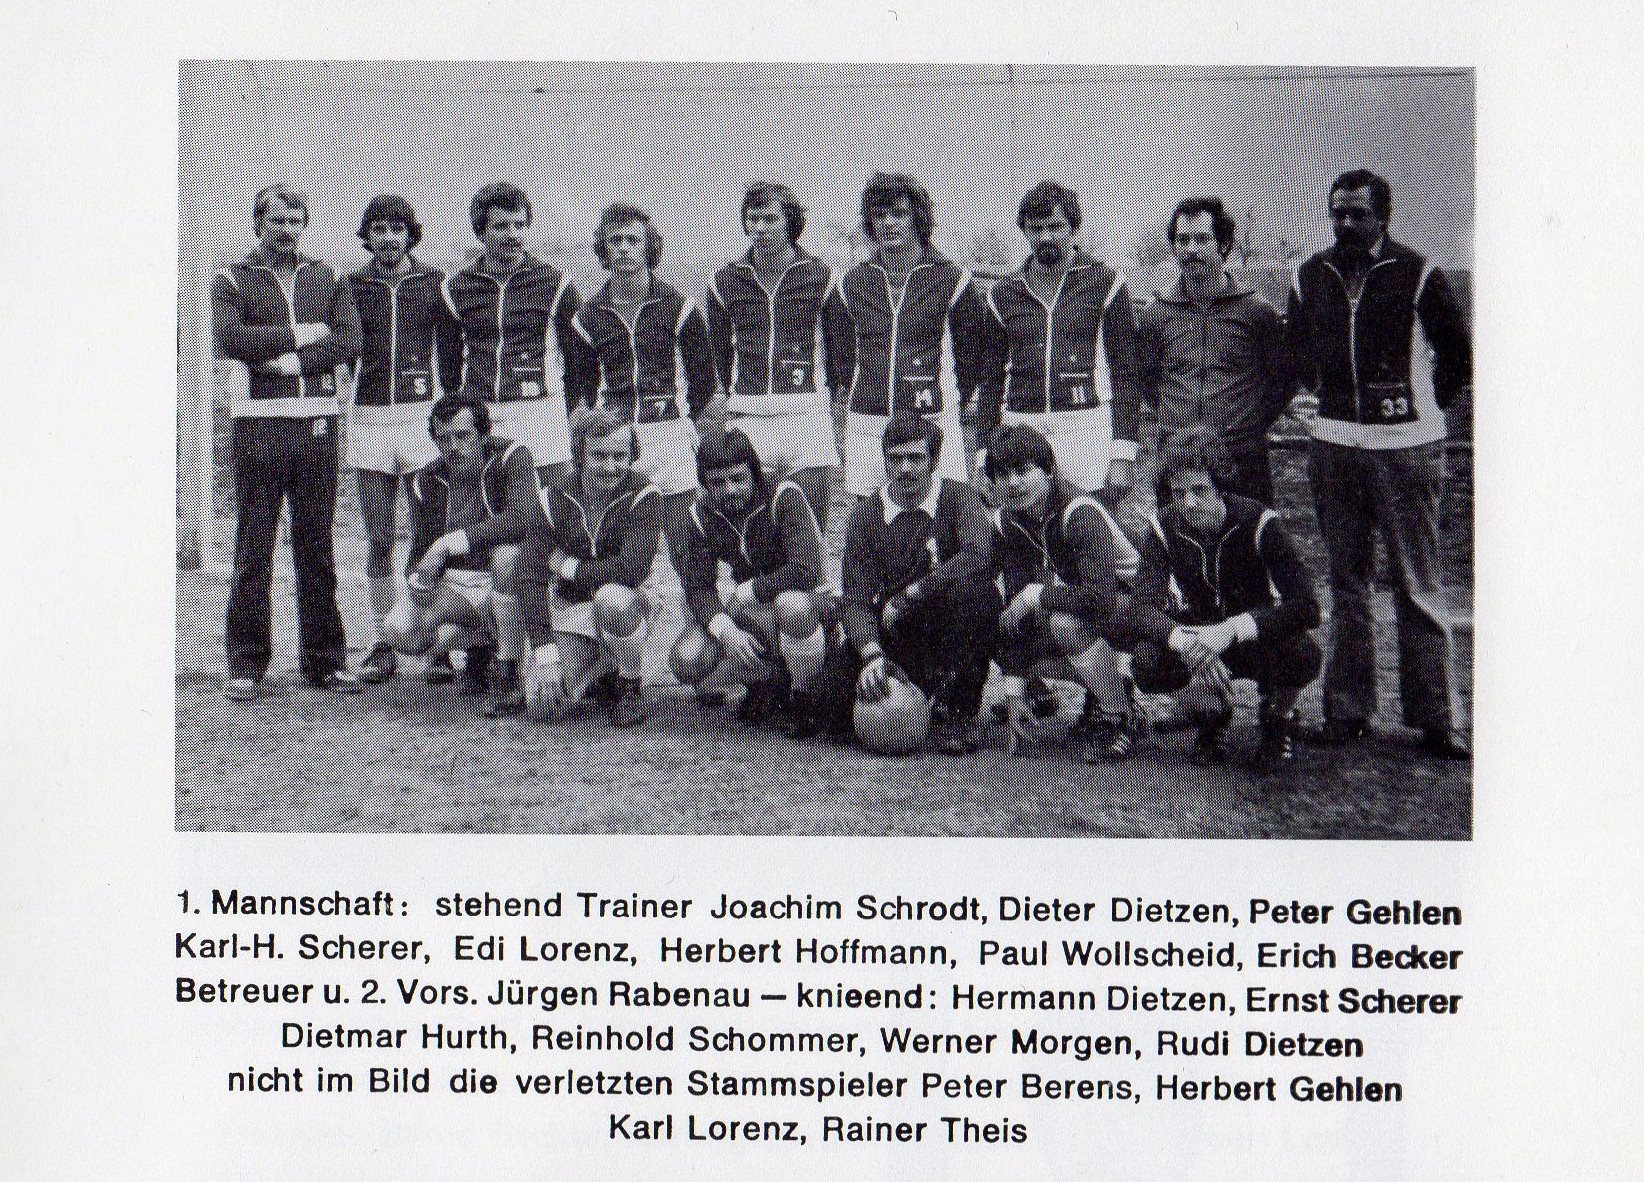 Mannschaft 1978